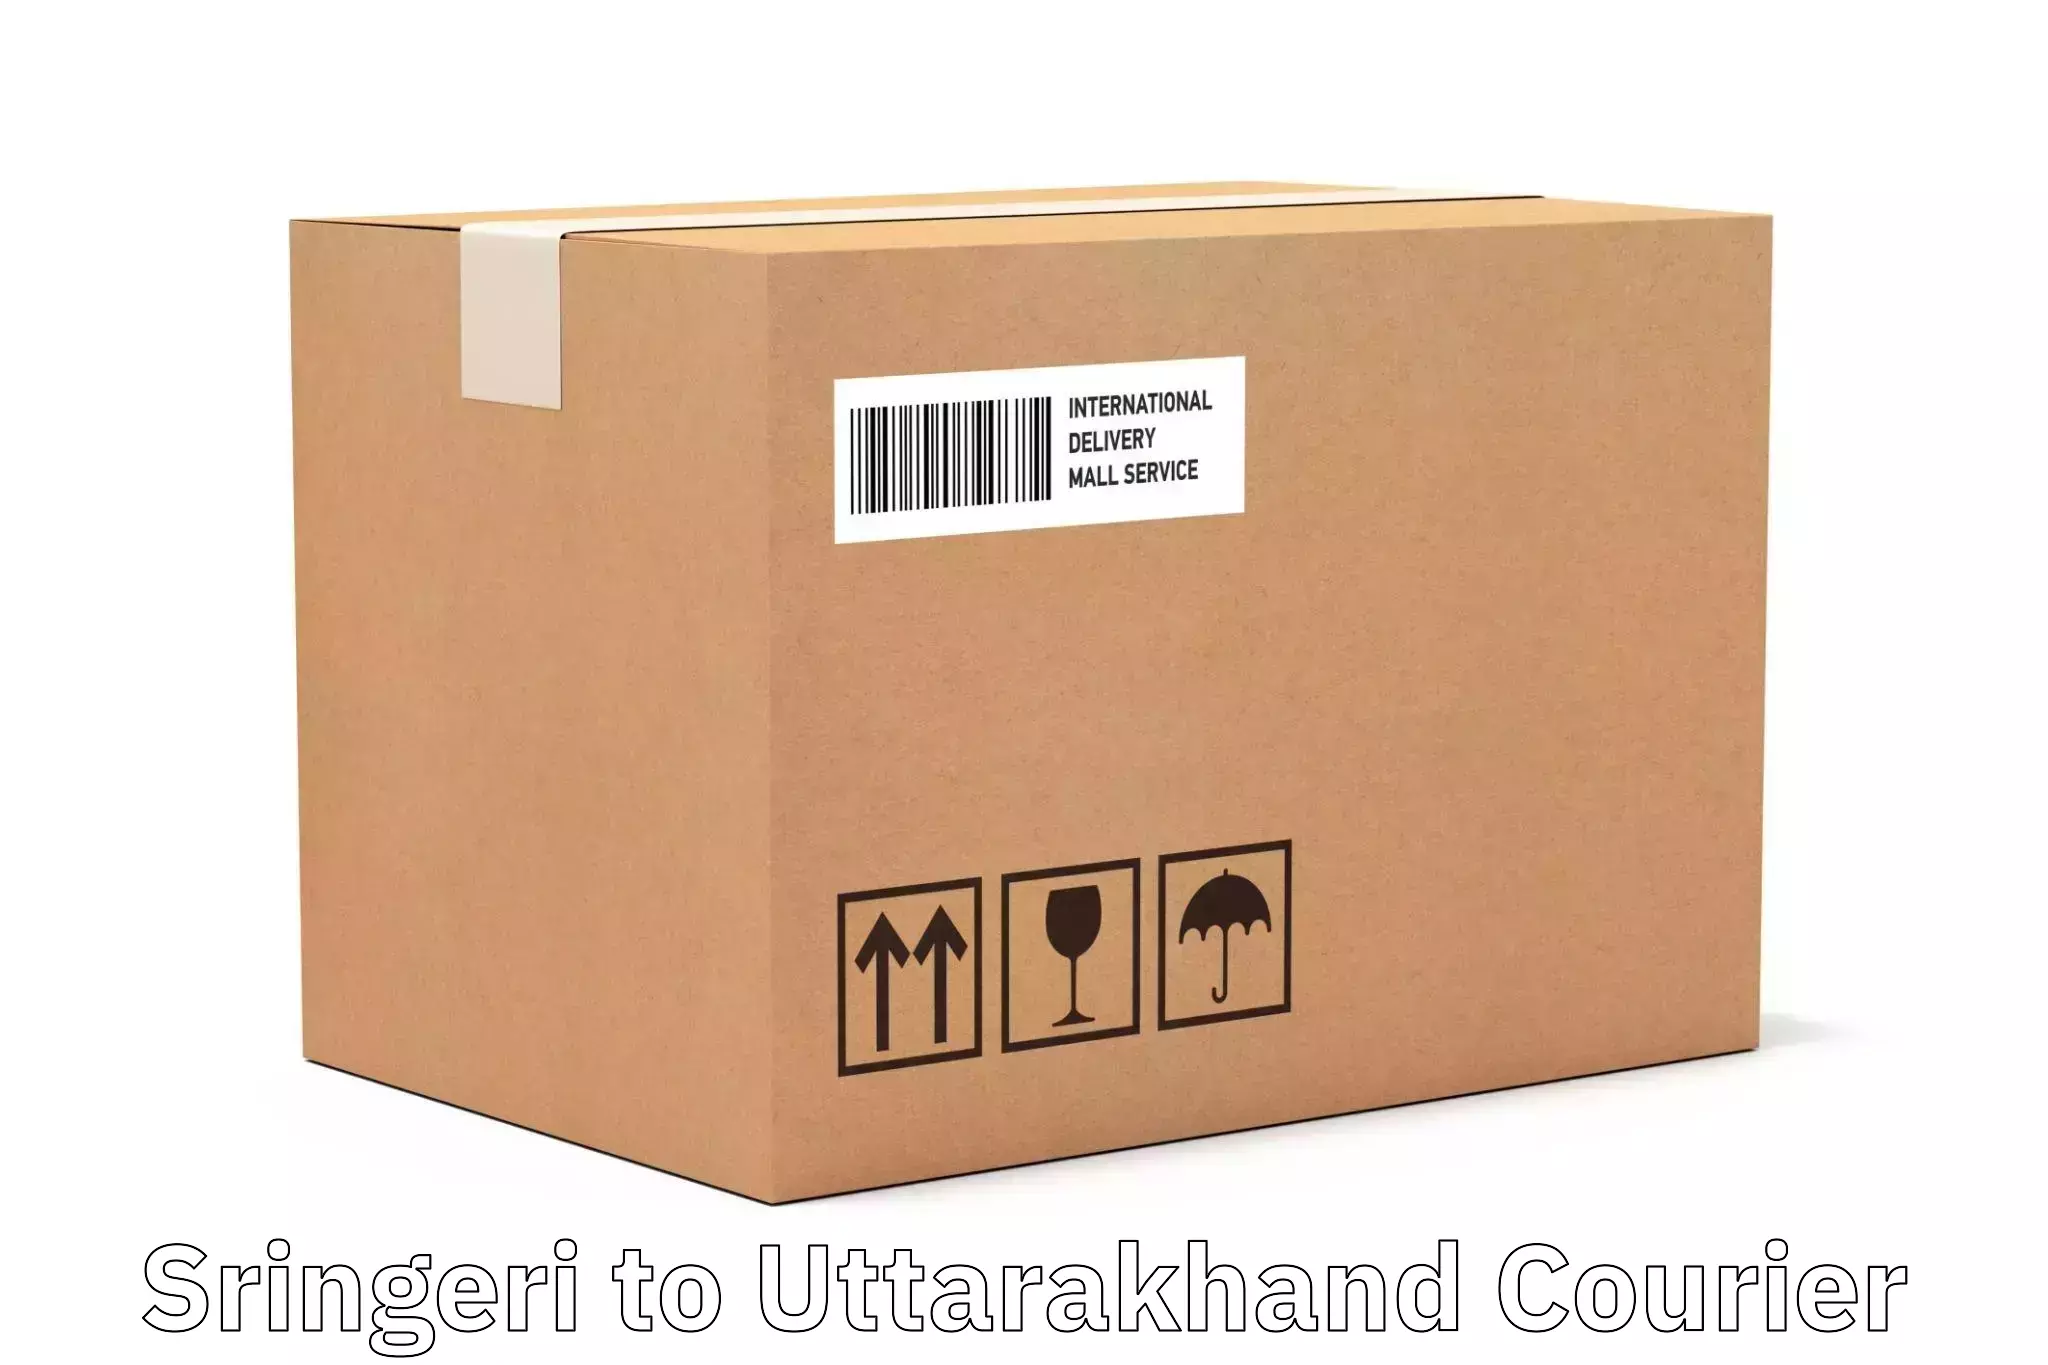 Digital courier platforms Sringeri to Uttarakhand